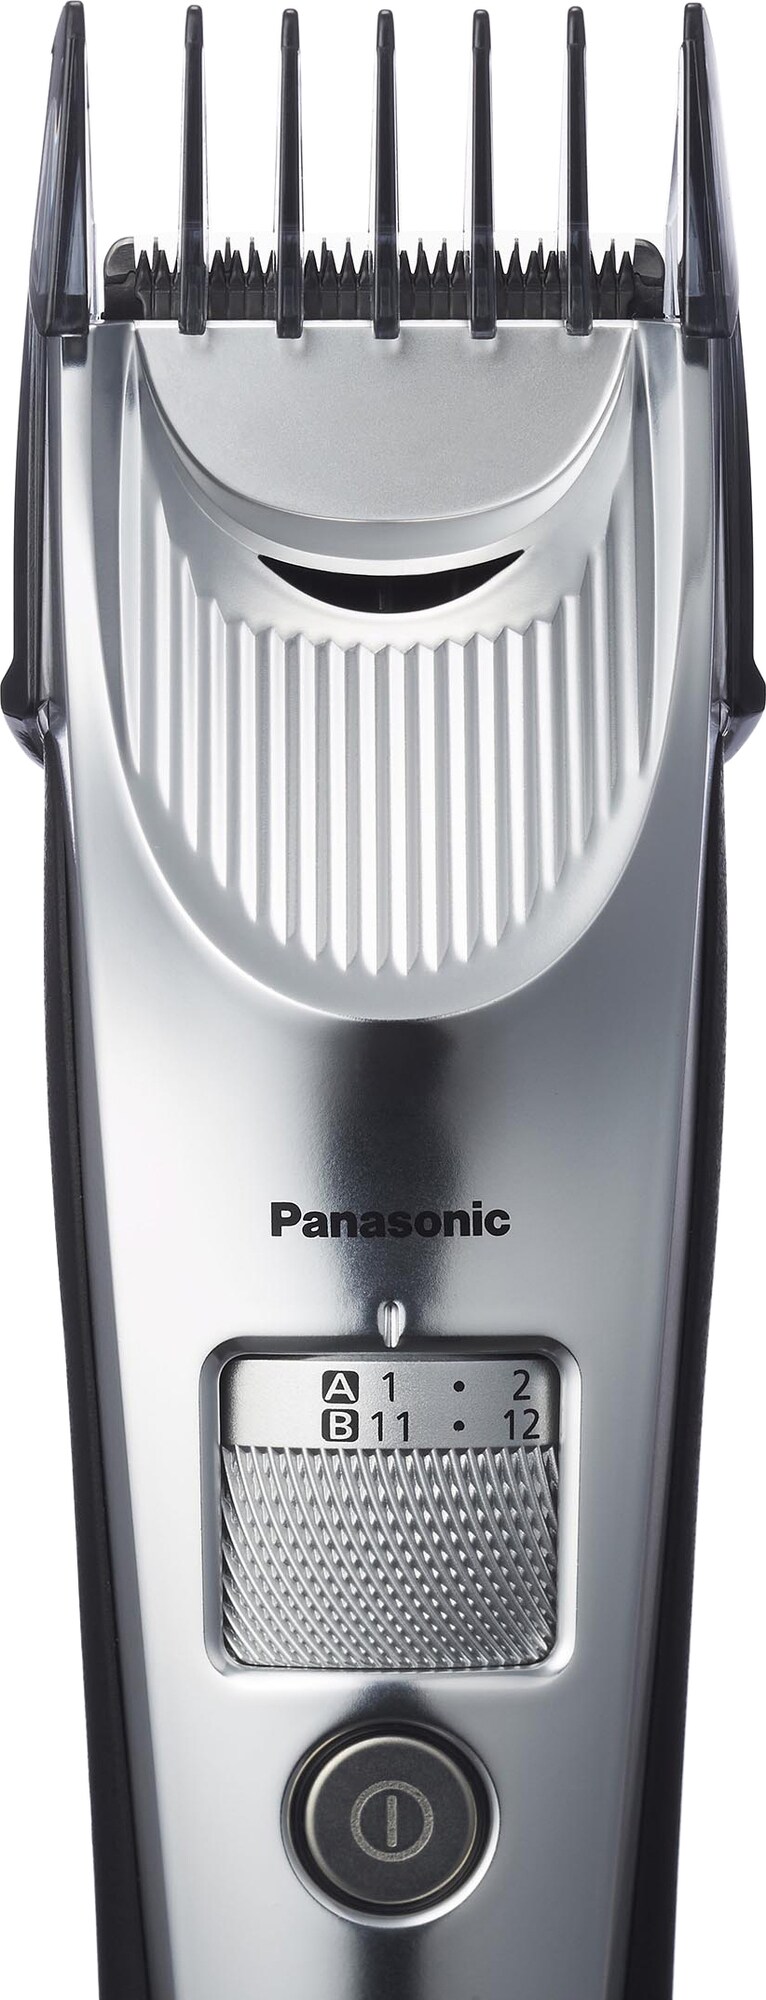 Panasonic hårtrimmer ERSC60S803 - Hårklippare - Elgiganten